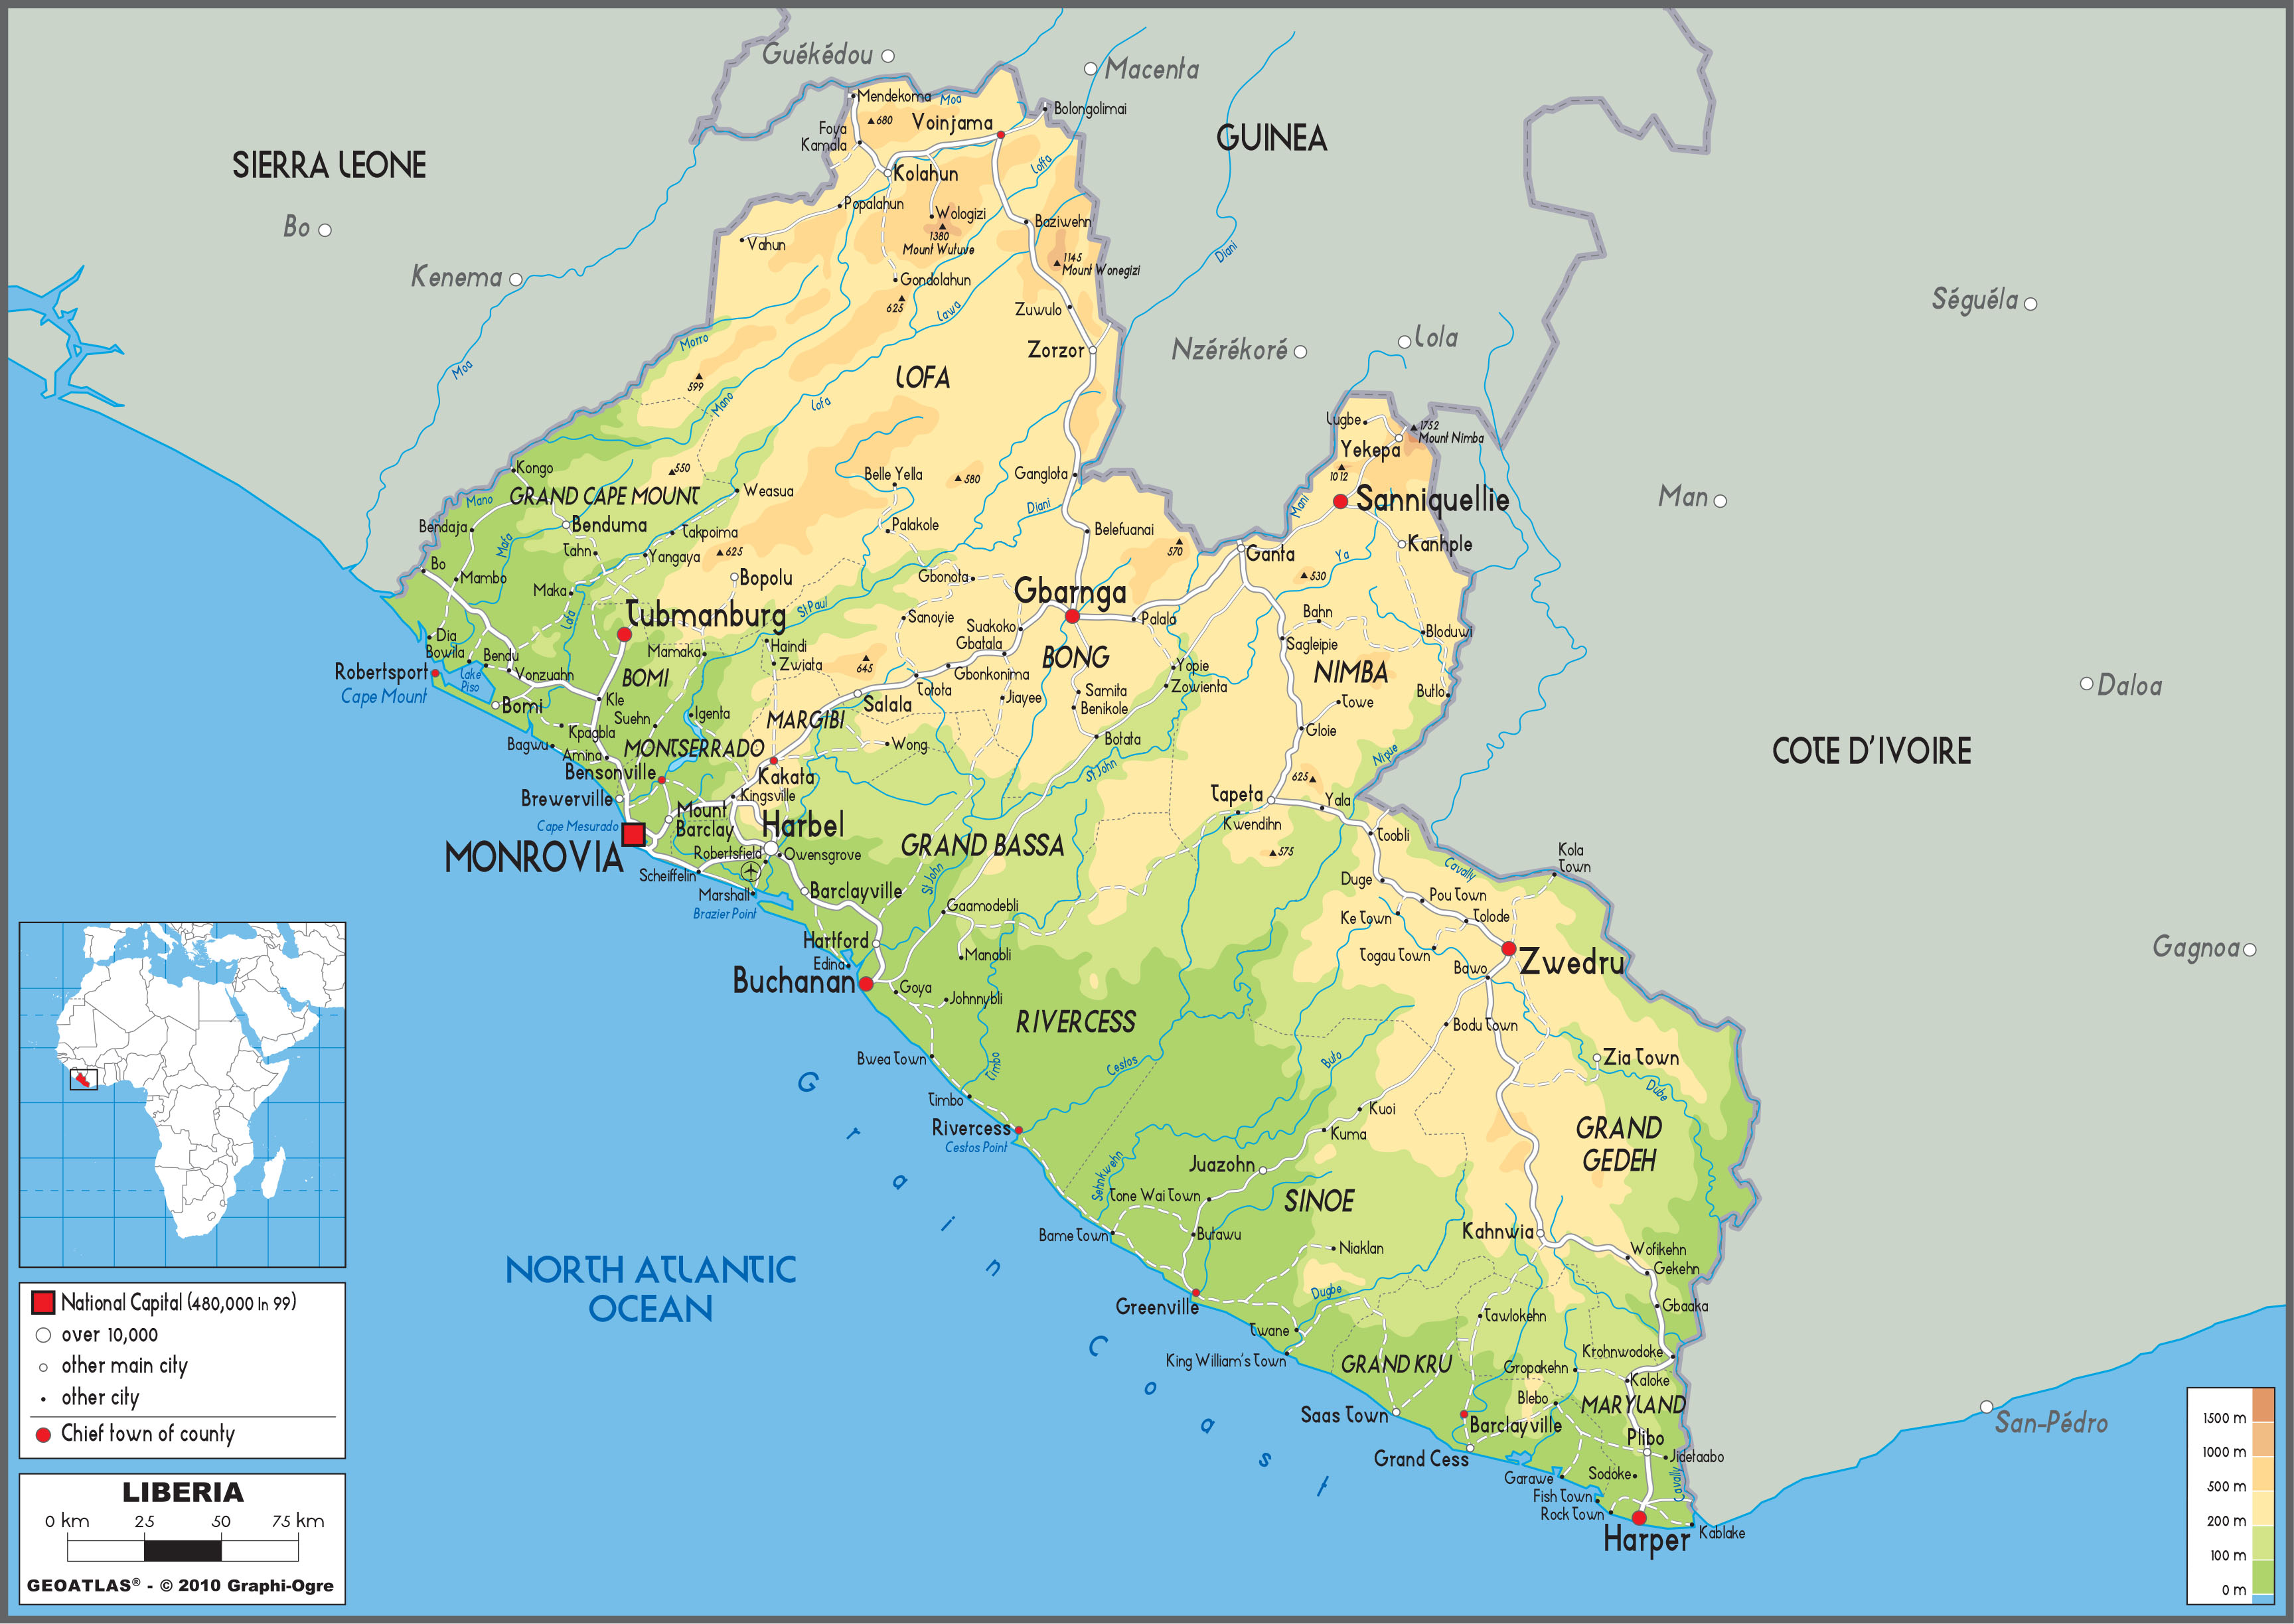 Cuál es la capital de liberia